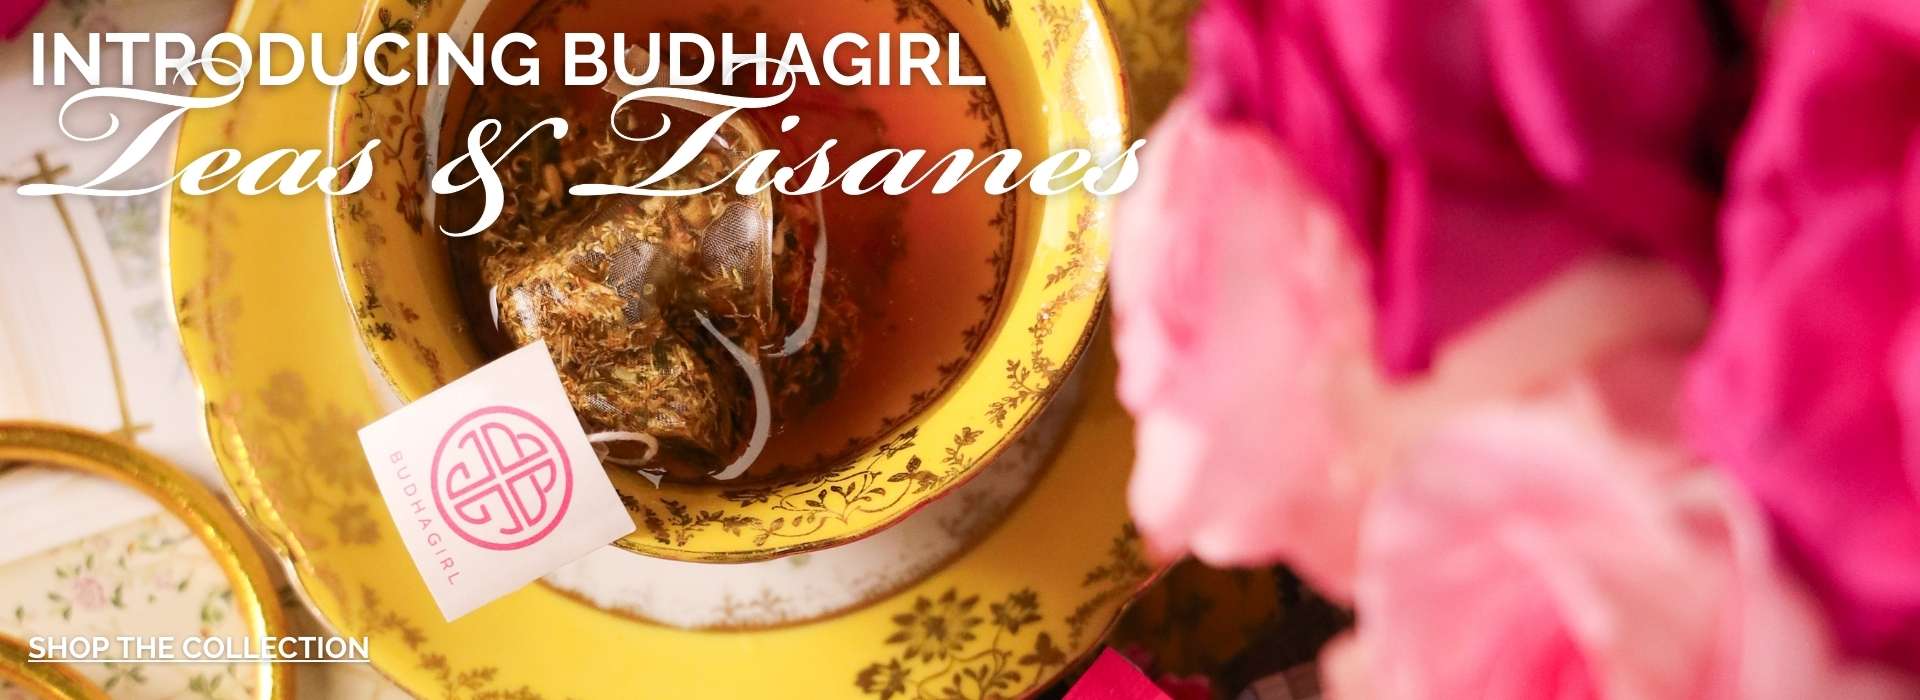 BuDhaGirl Organic Teas and Tisanes | BuDhaGirl